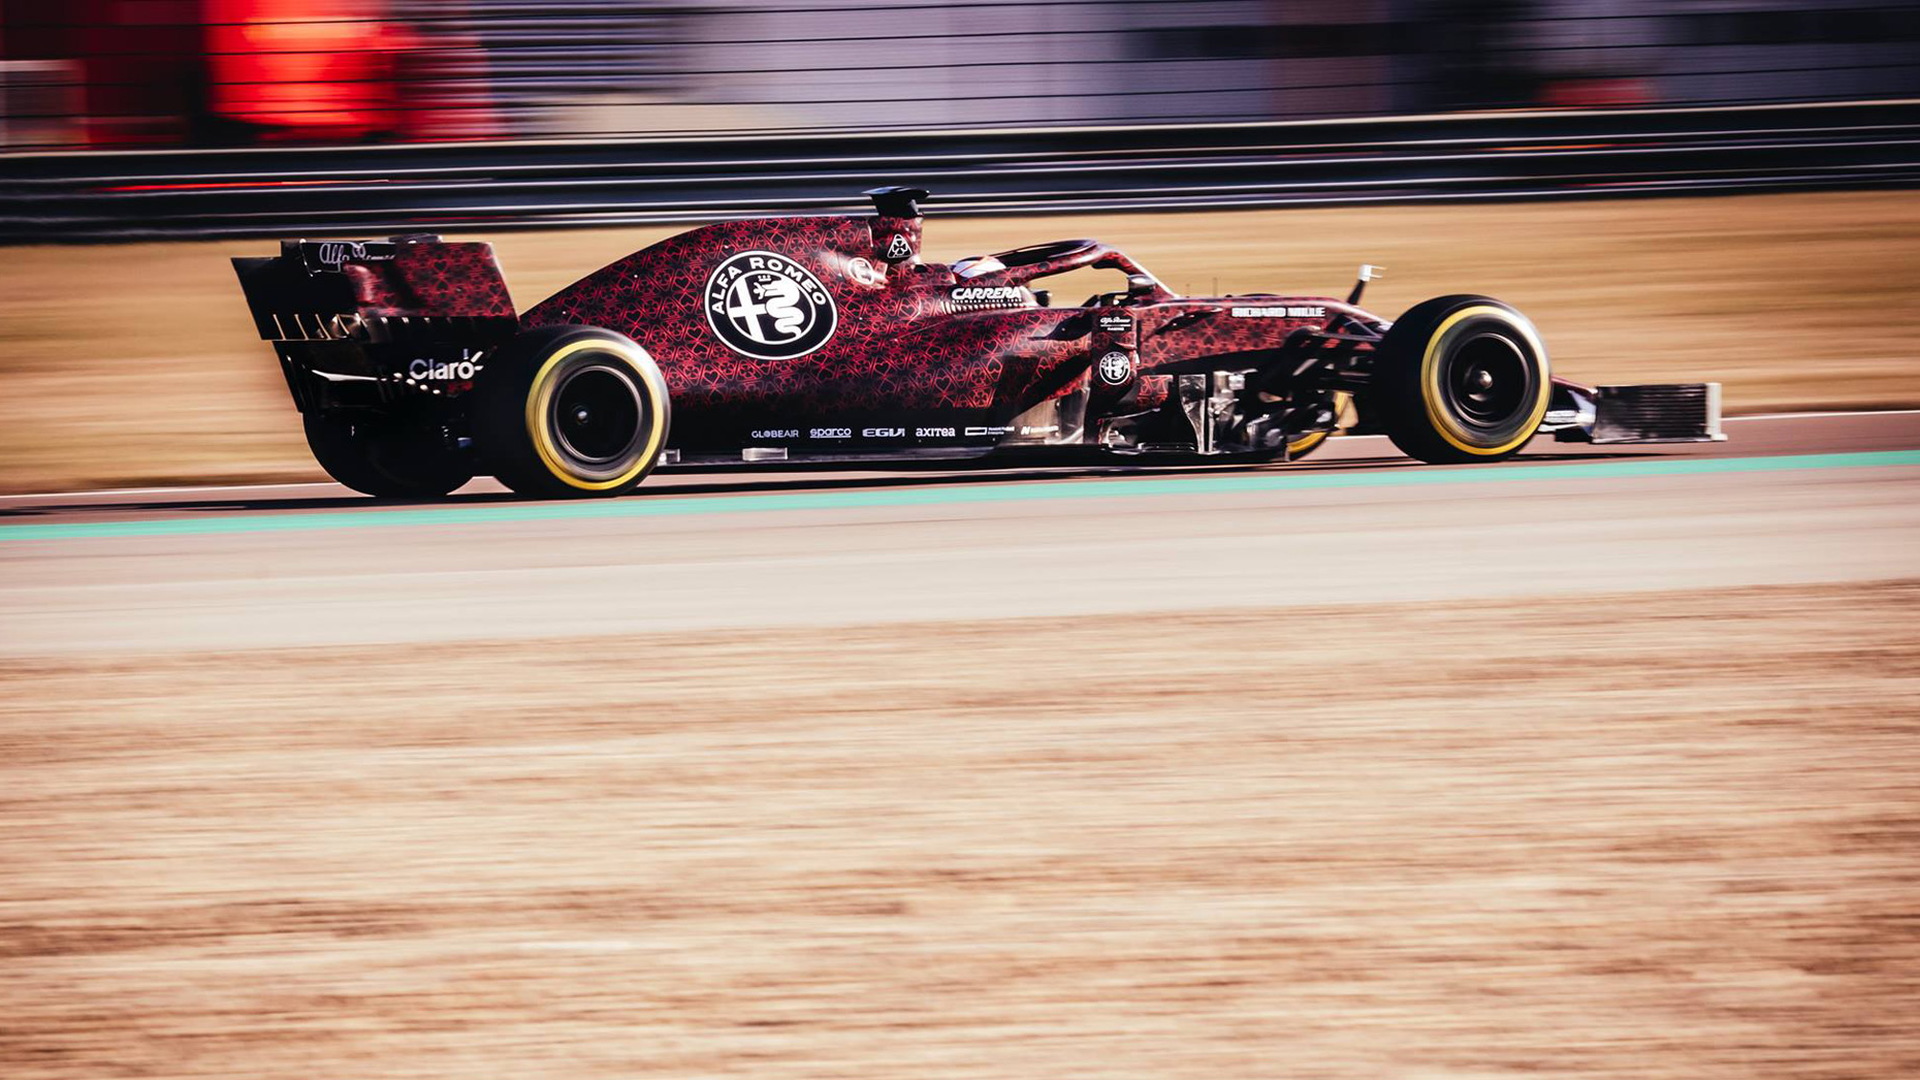 2019 Alfa Romeo C38 Formula 1 race car